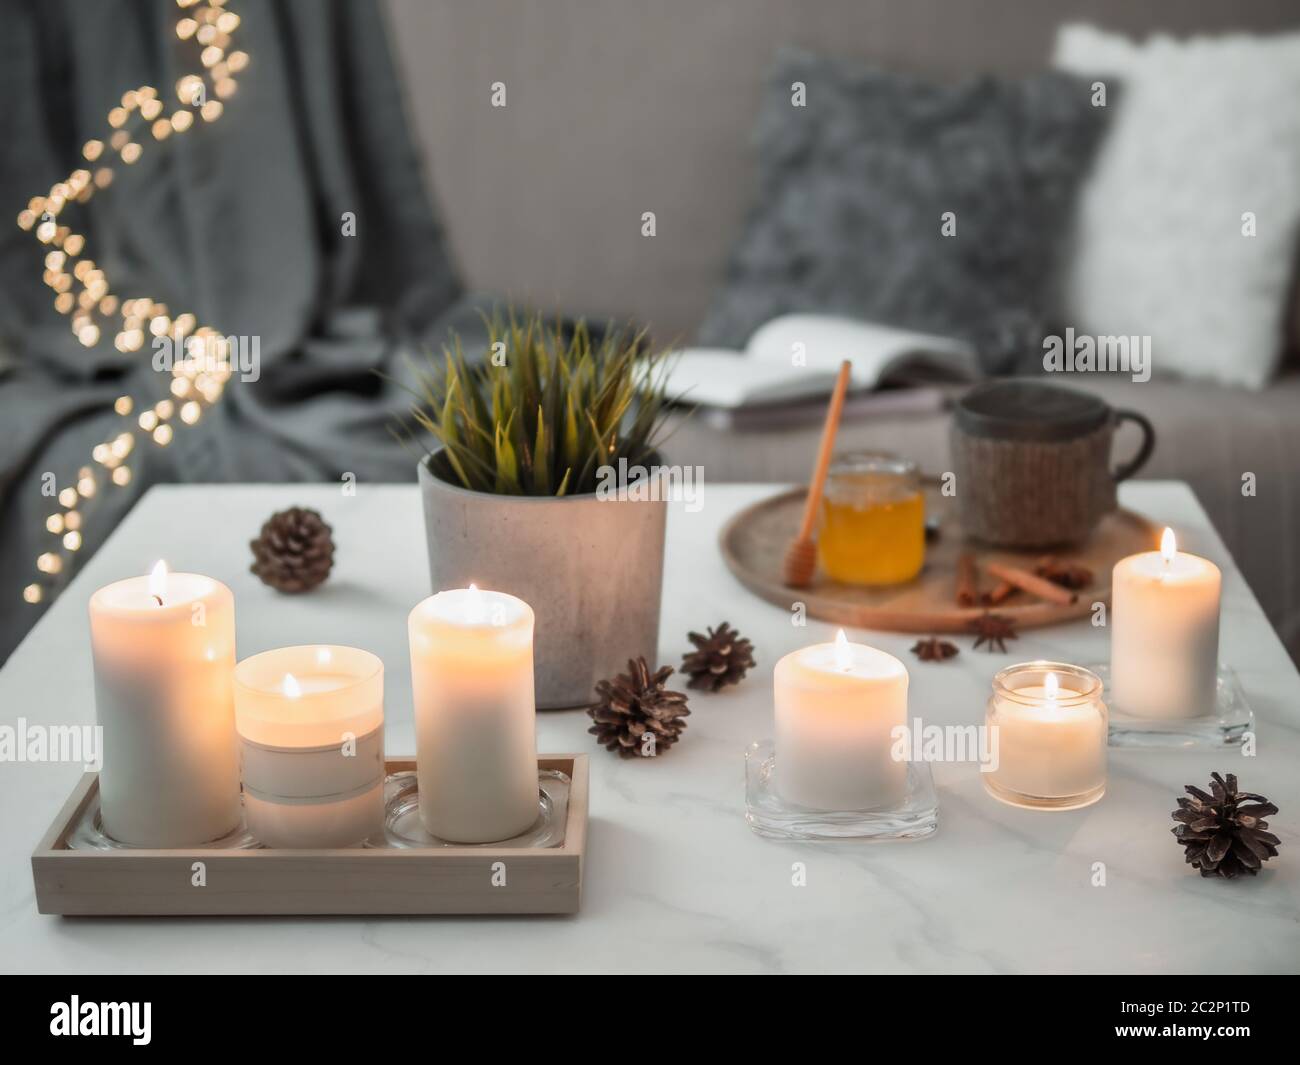 Maison confortable, hygge, concept de coziness - bougies parfumées blanches sur table en marbre blanc près du canapé avec oreillers et écossais. Décoration d'hiver, tasse à thé chaude Banque D'Images